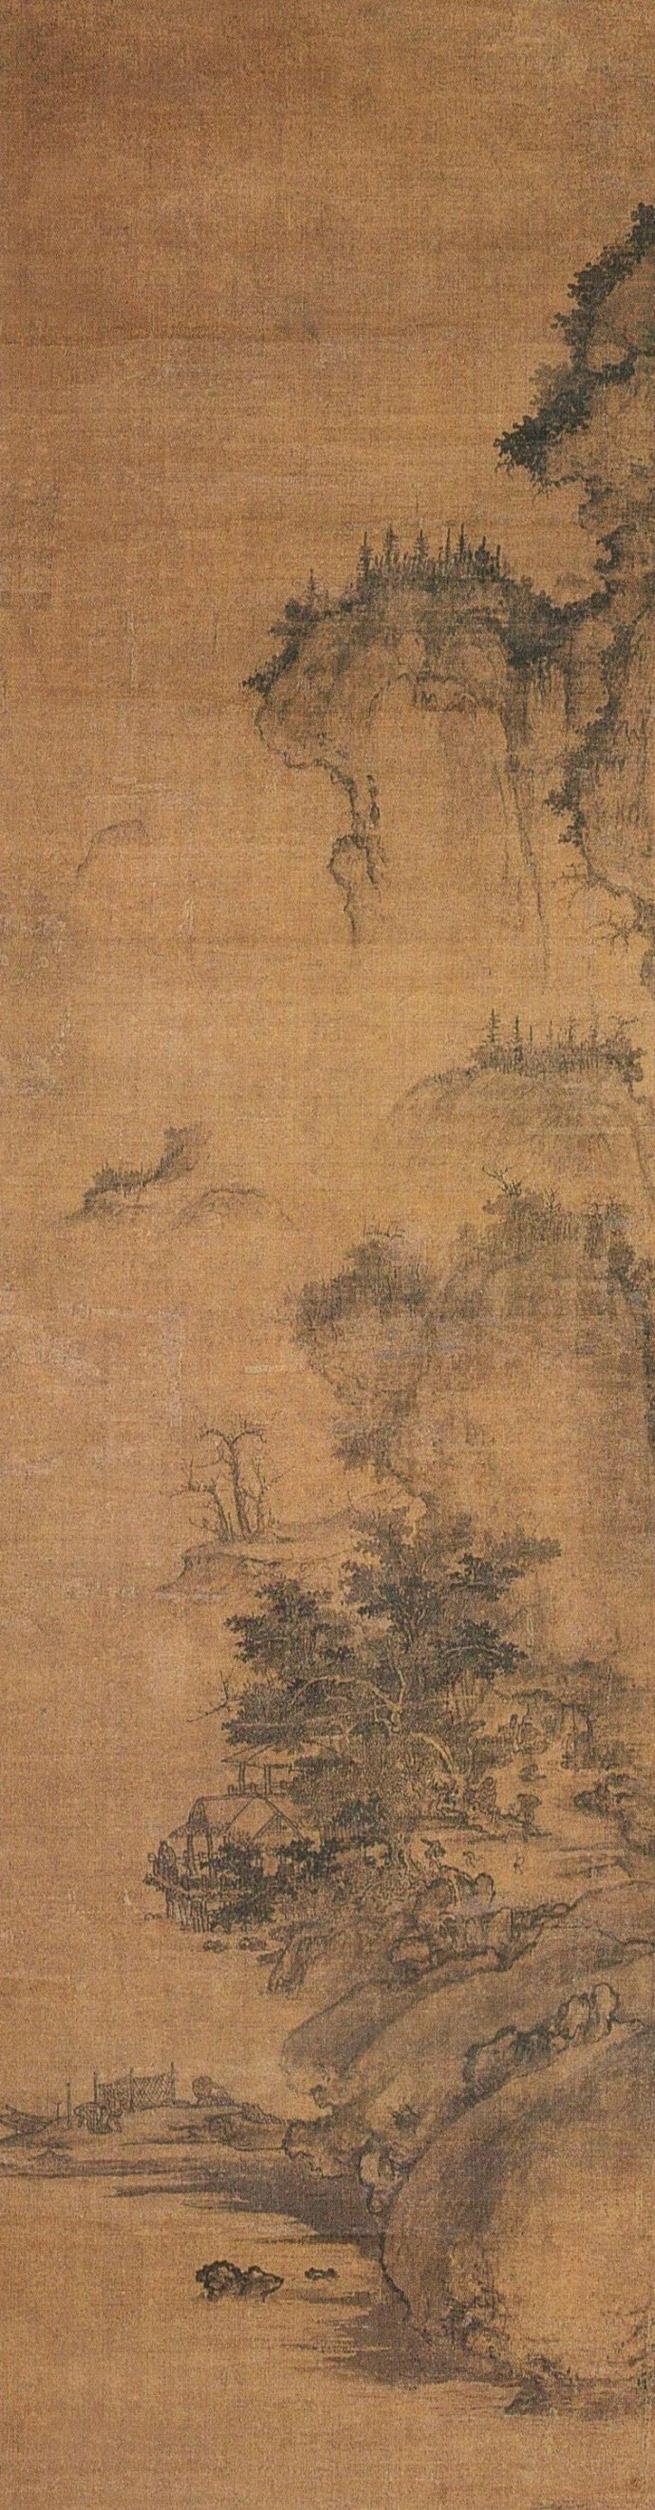 郭熙以山水画知名于时,尤其擅长表现季节和气候特征的山水画.